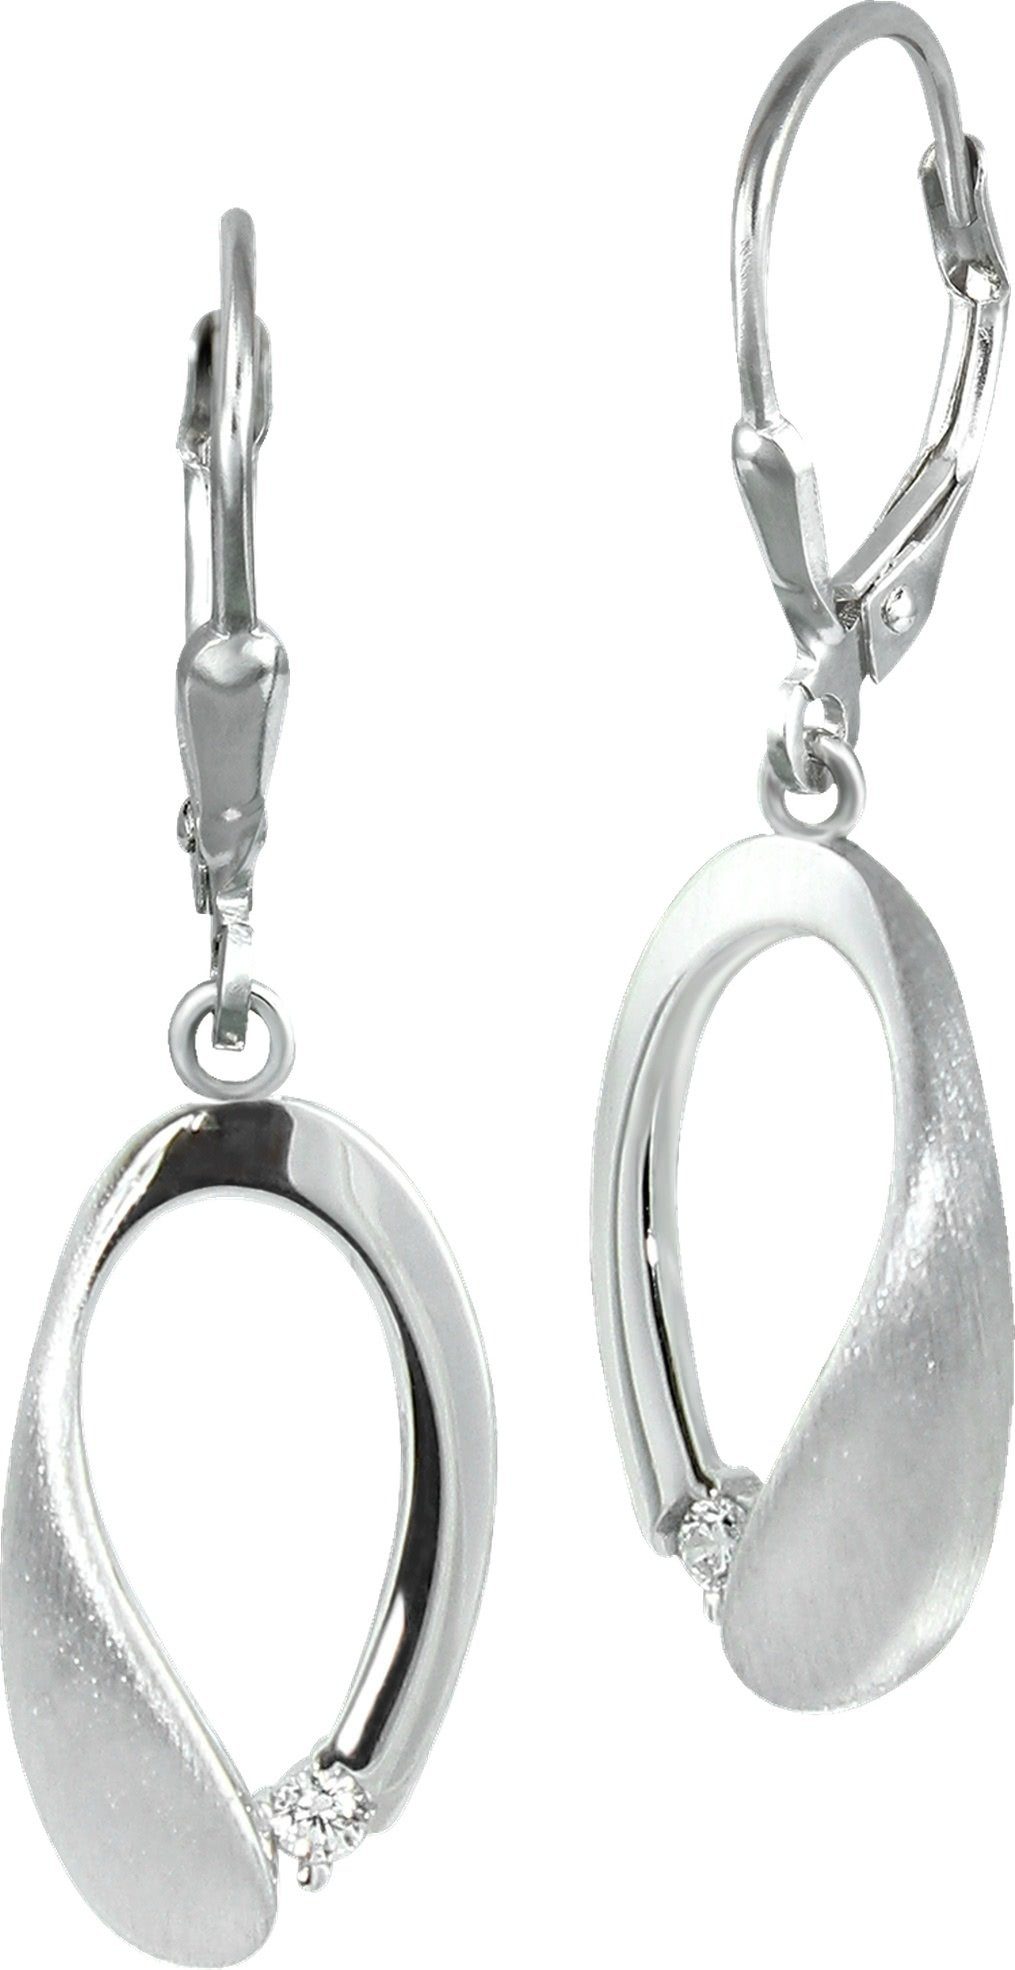 SilberDream Paar Ohrhänger SilberDream Damen Ohrhänger 925 Ohrringe (Ohrhänger), Damen Ohrhänger Träne aus 925 Sterling Silber, glanz, matt, Farbe: sil